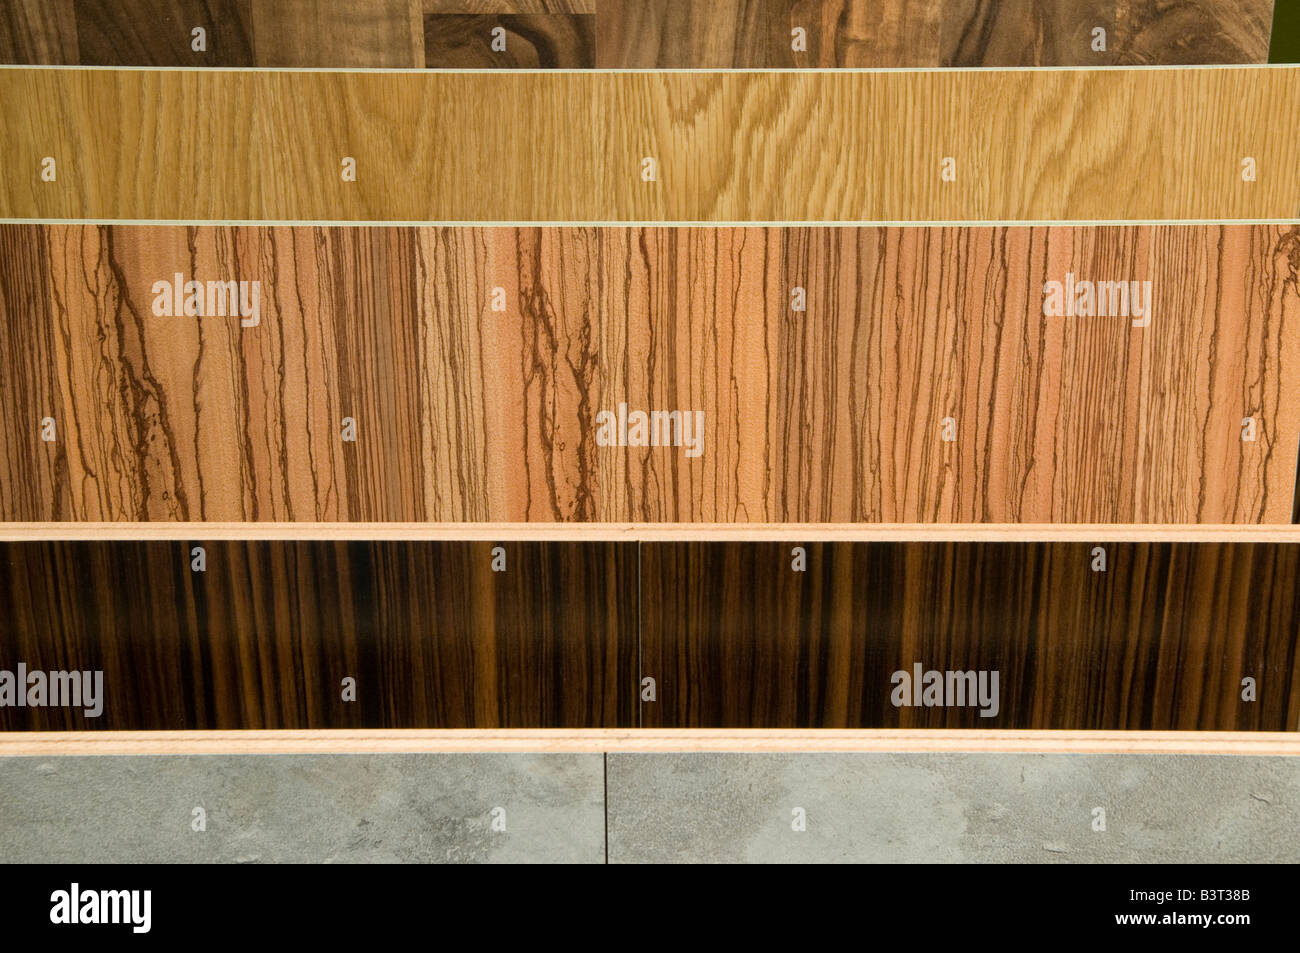 Strips of wooden parquet floor Stock Photo